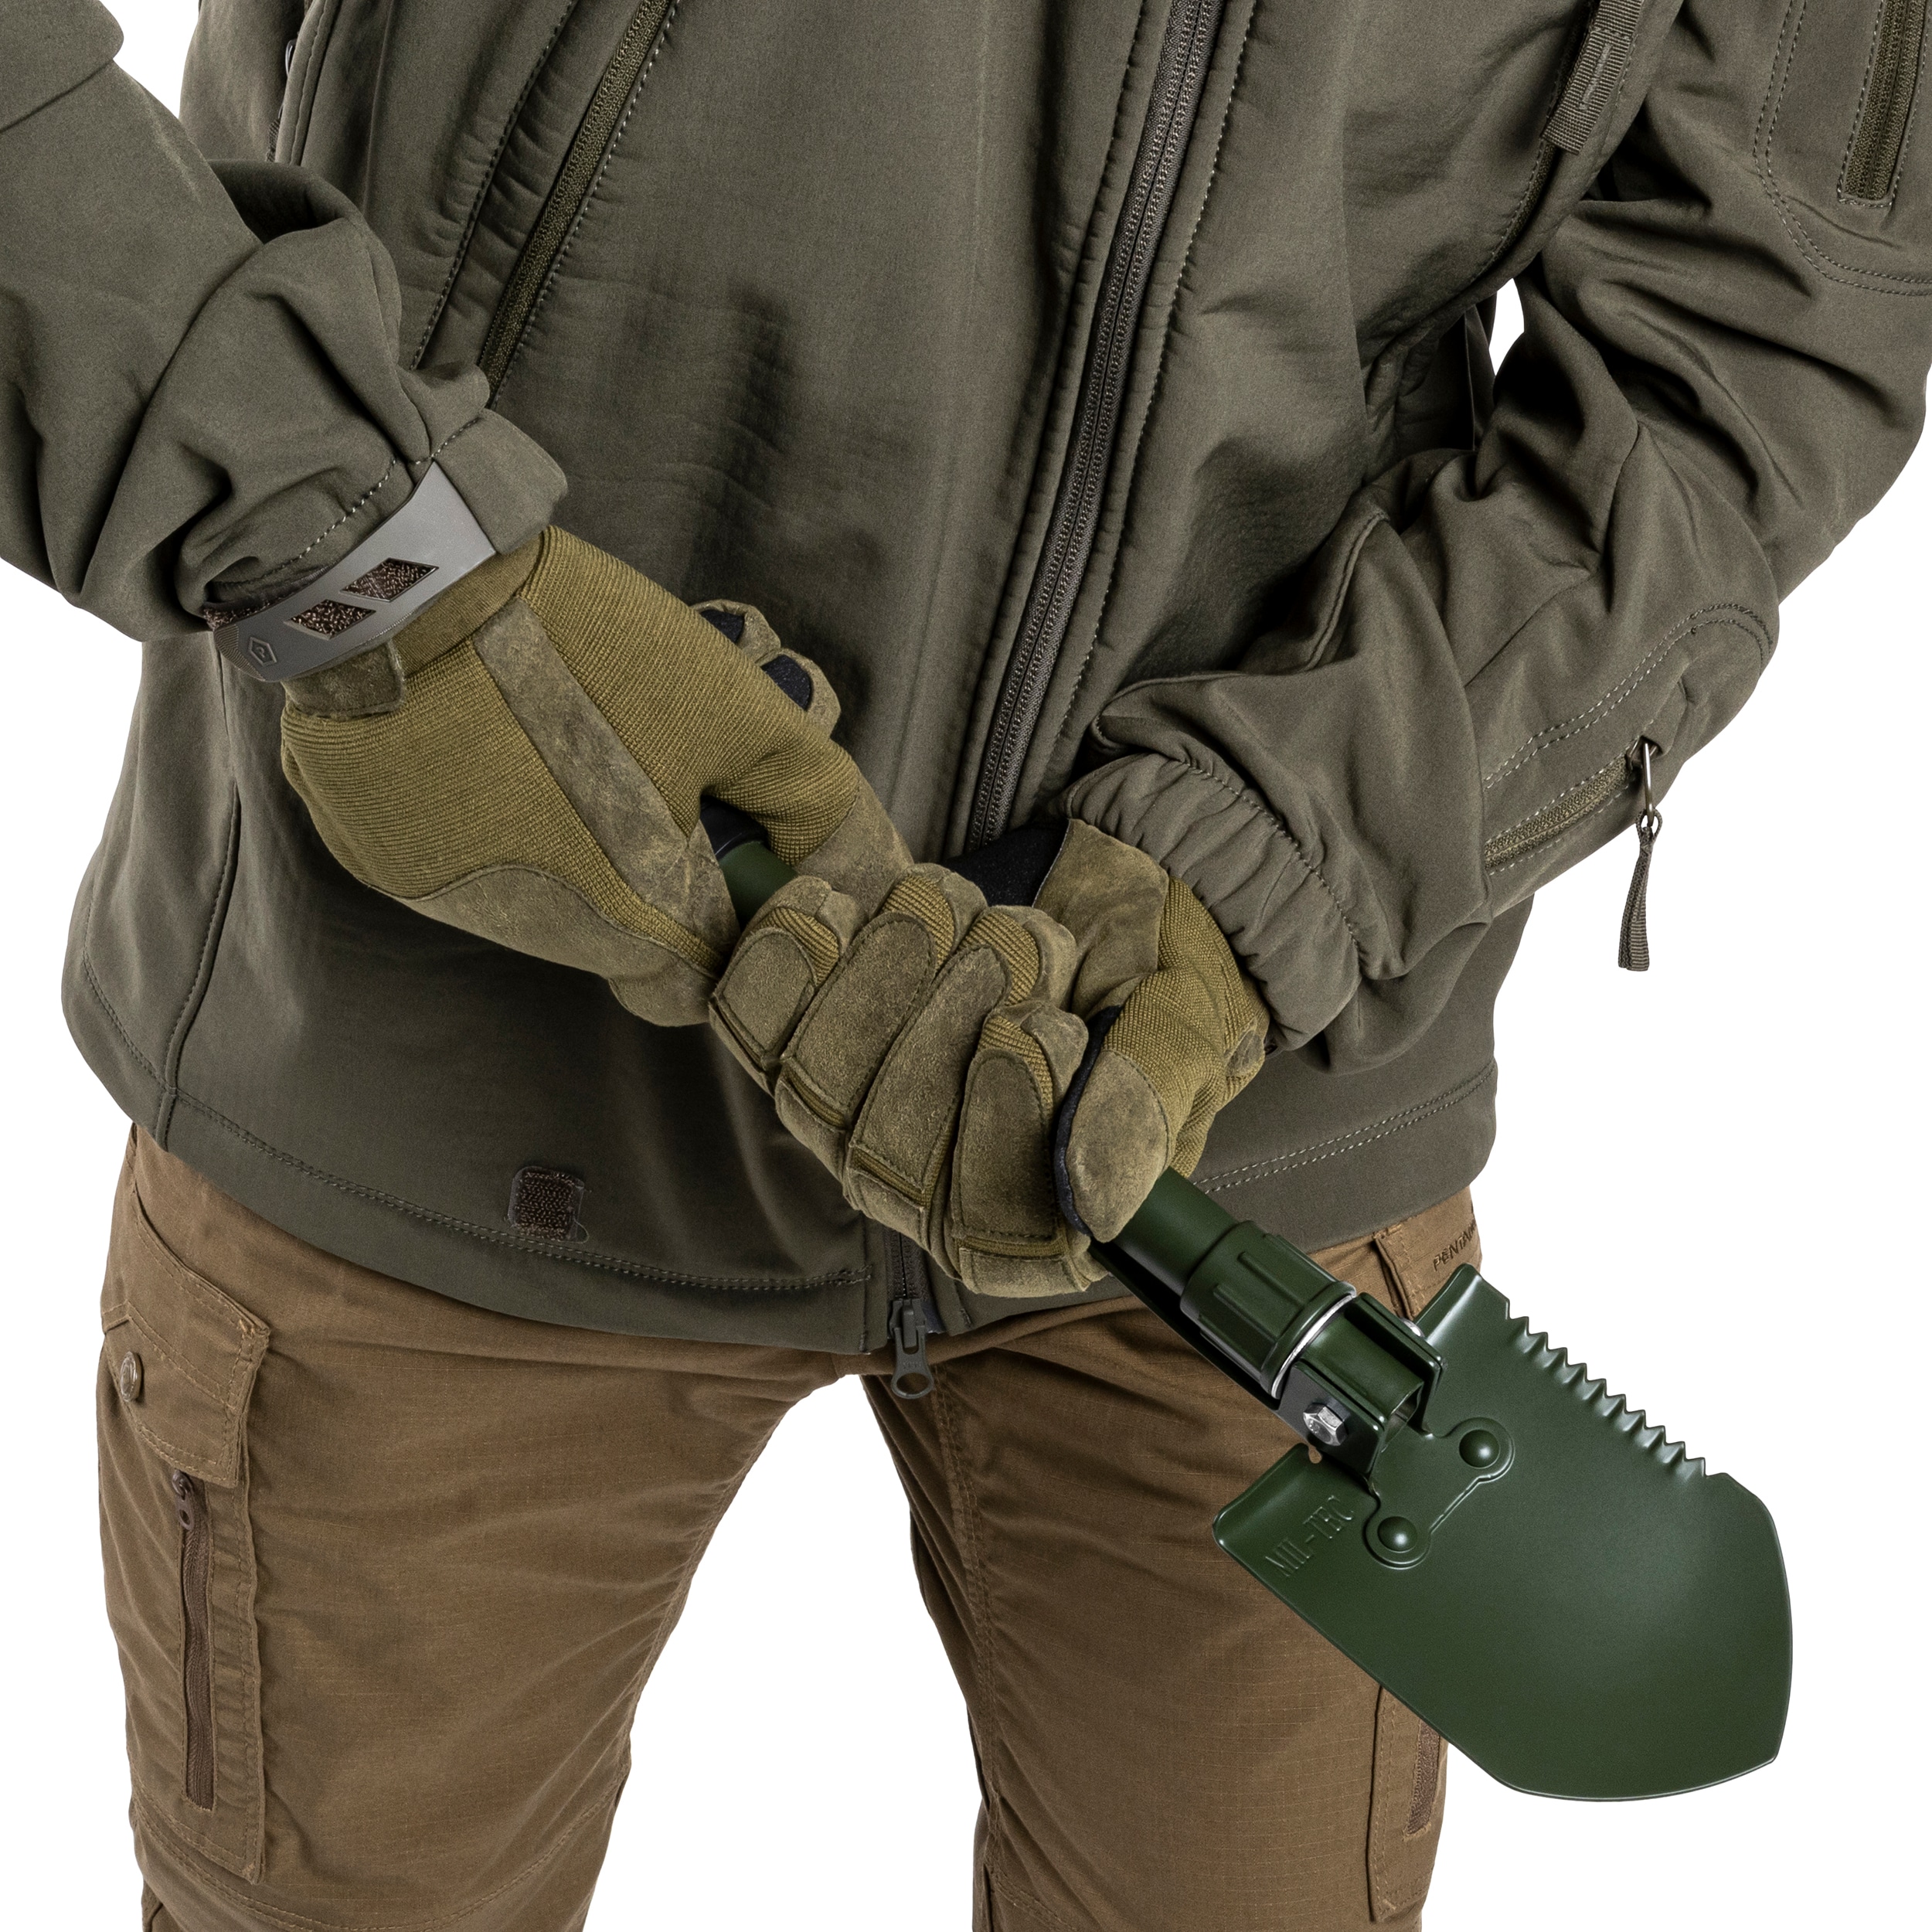 Складана саперна лопата Mil-Tec Typ Mini II - Green